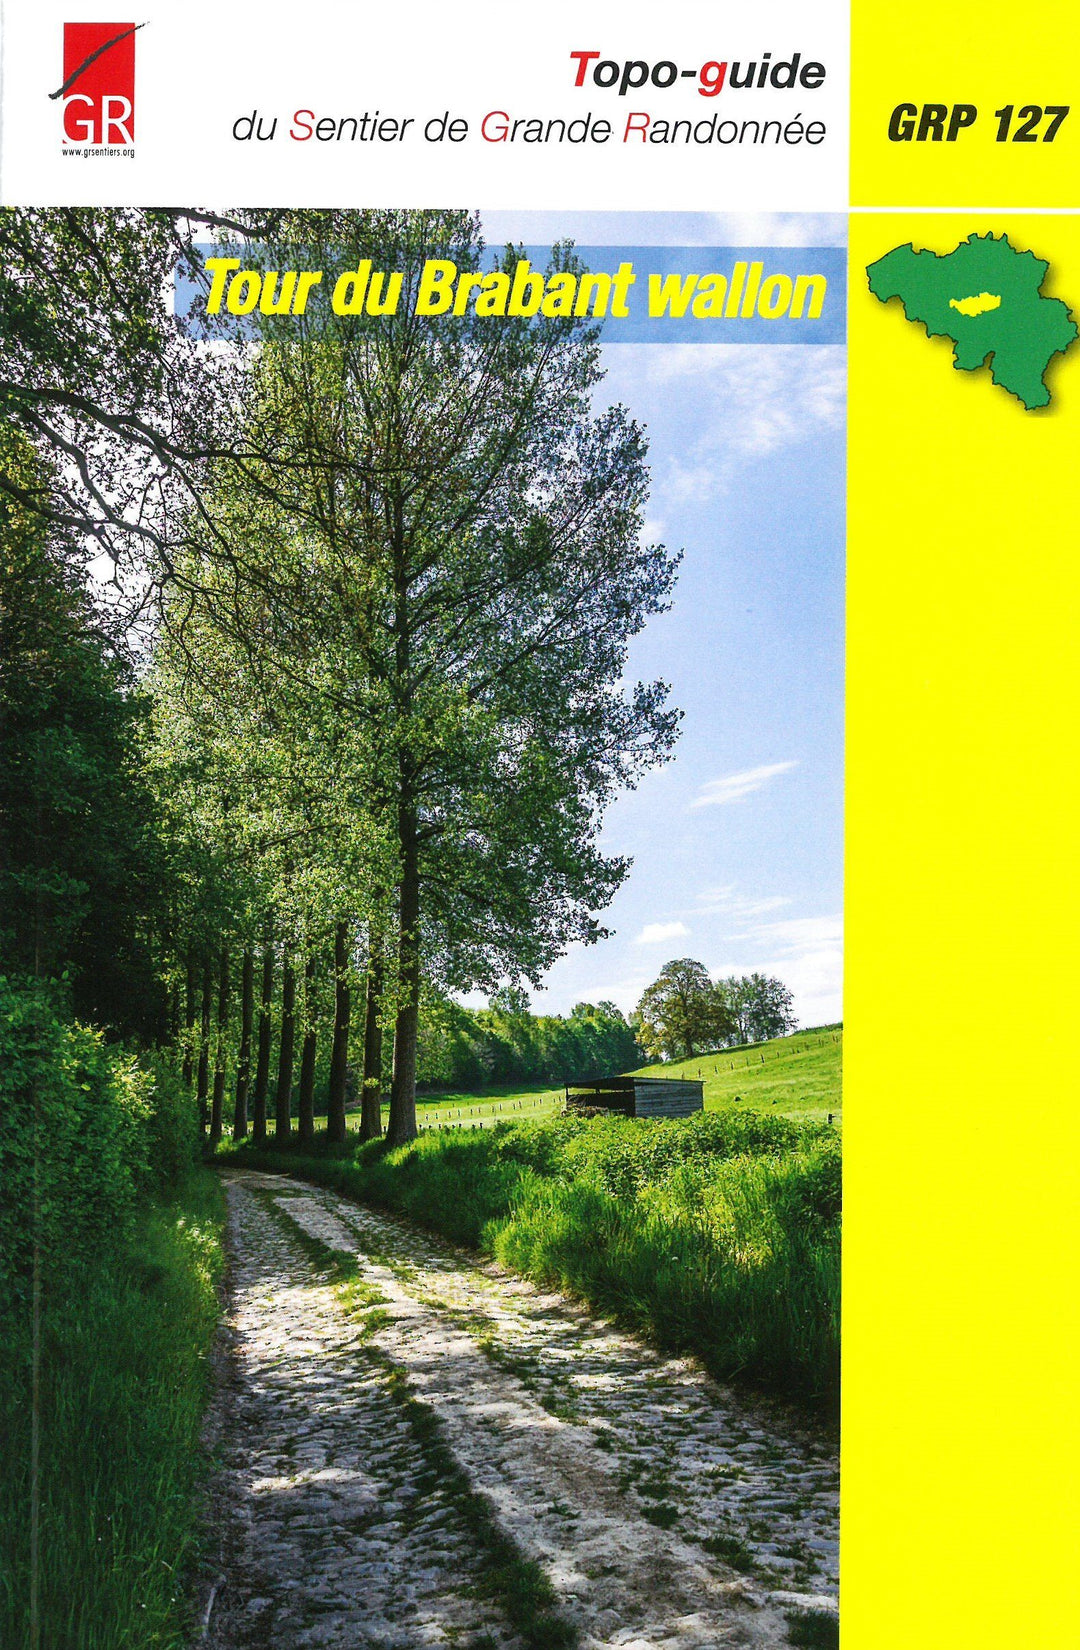 Topoguide de randonnée - Tour du Brabant Wallon - GRP127 (Belgique) | Les Sentiers de Grande Randonnée guide de randonnée Les Sentier de Grande Randonnée 